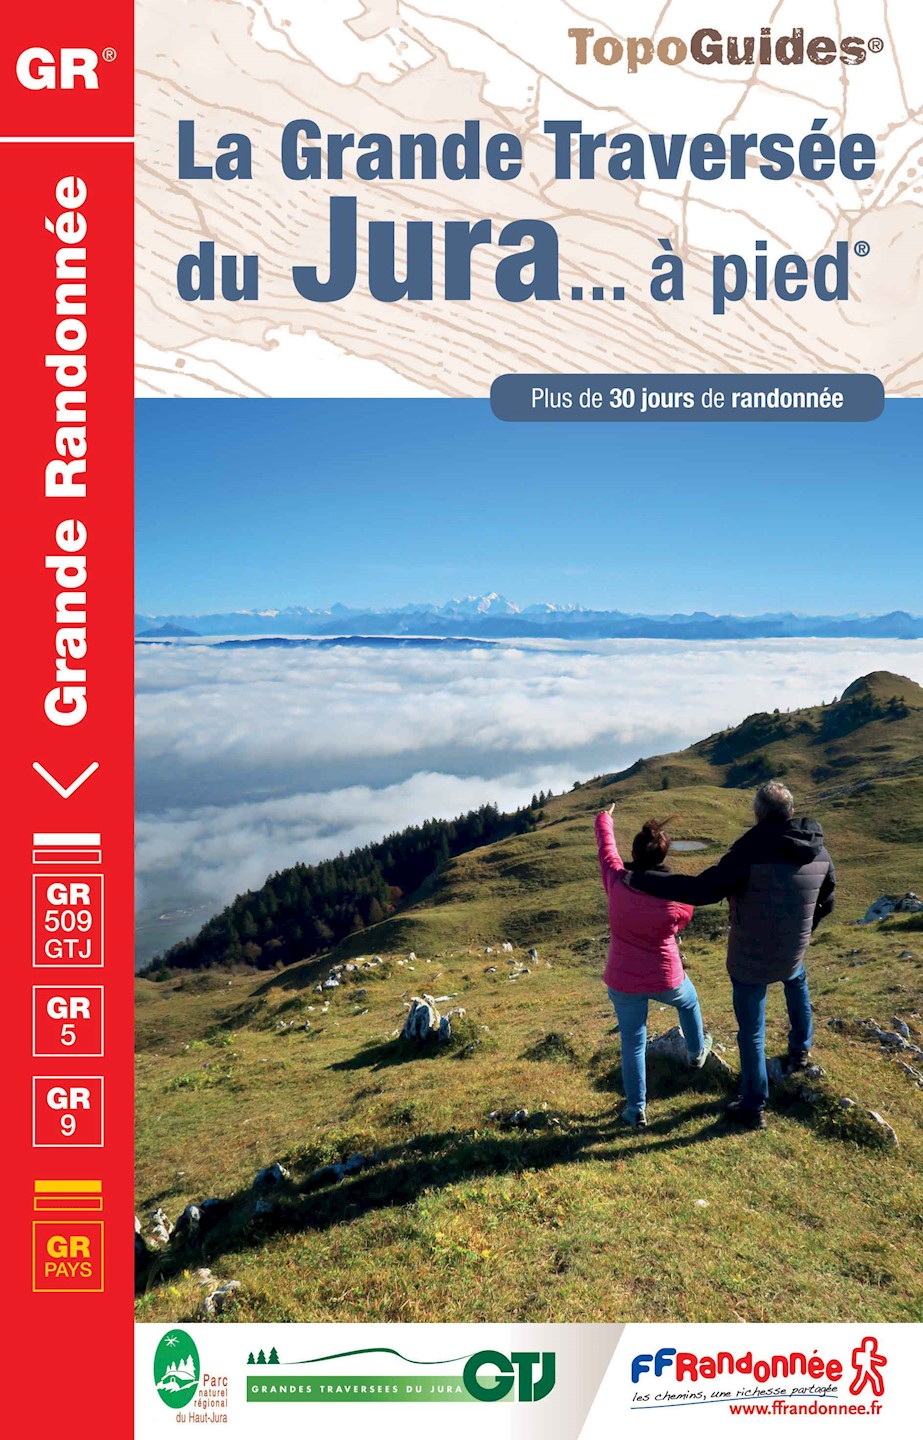 TopoGuide® GR - La Grande Traversée du Jura ... à pied® - 4ème édition